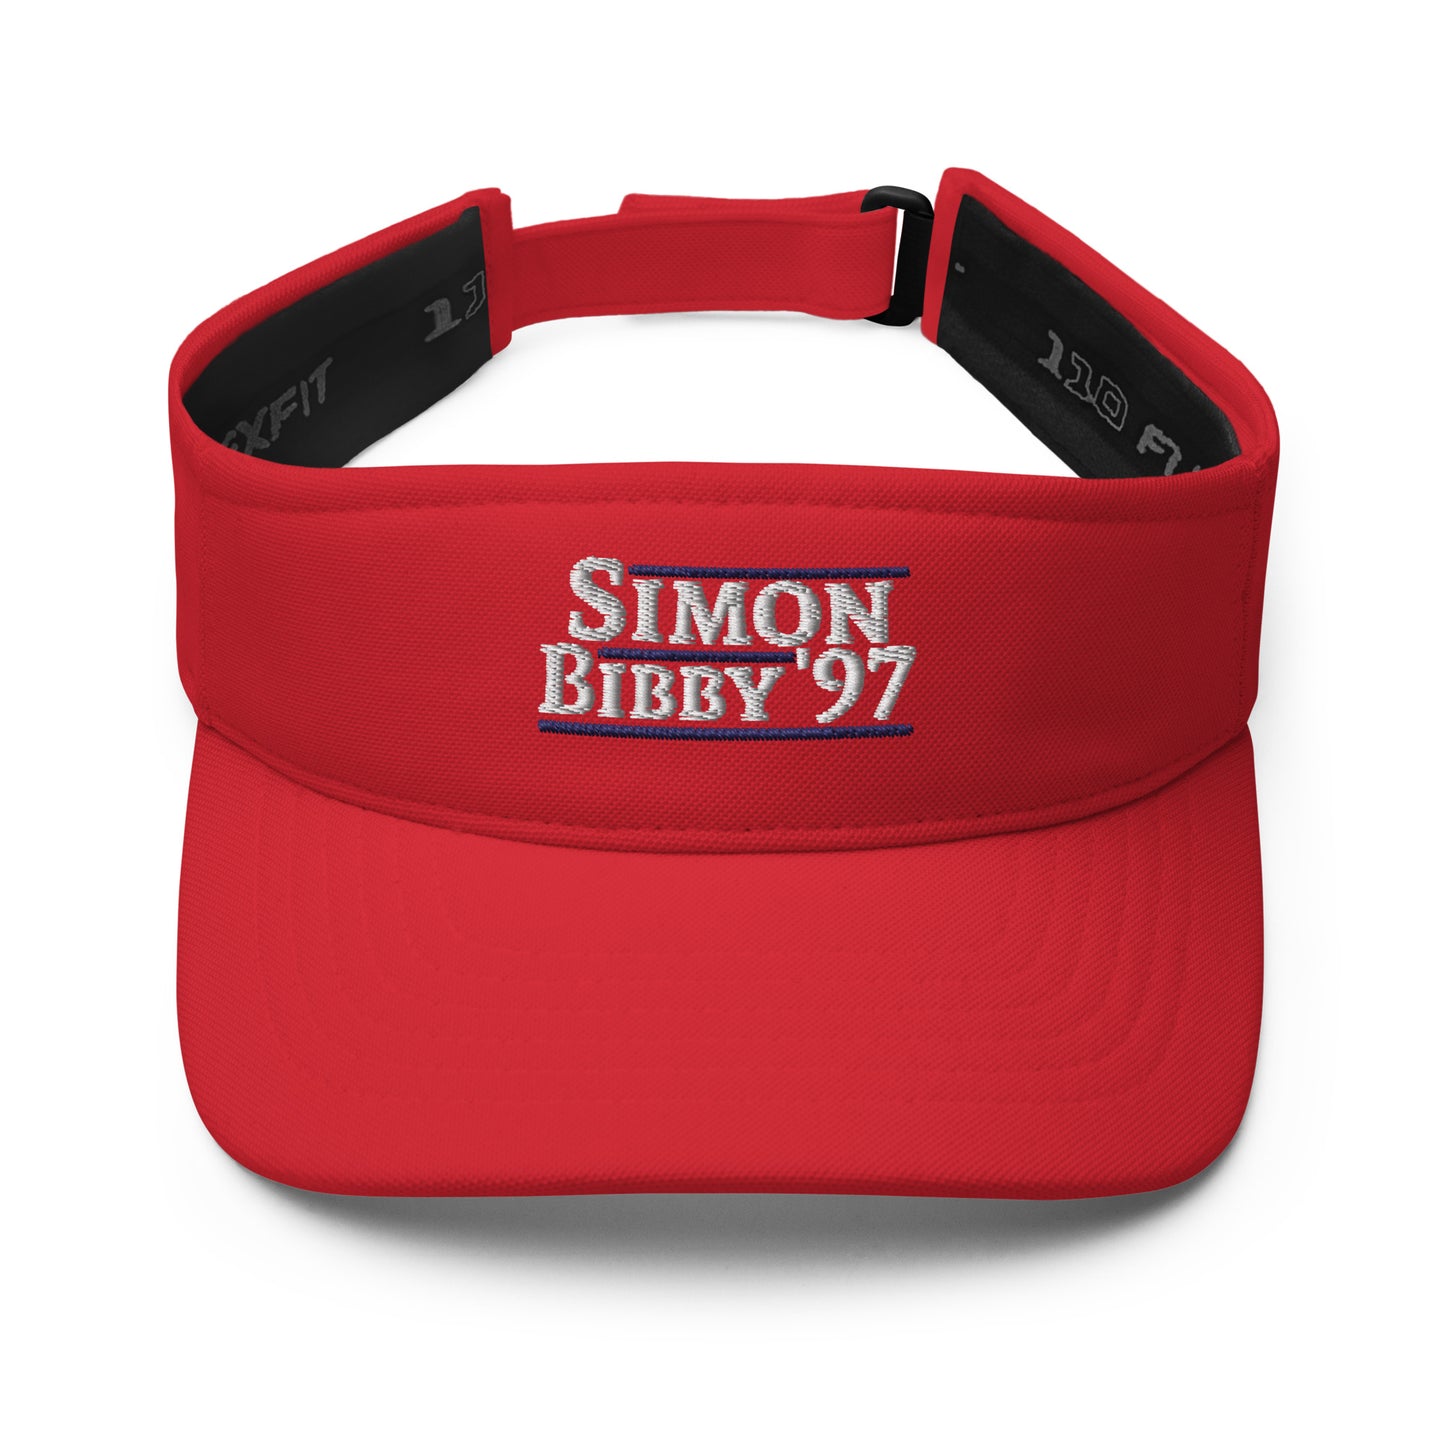 Simon/Bibby '97 - Visor